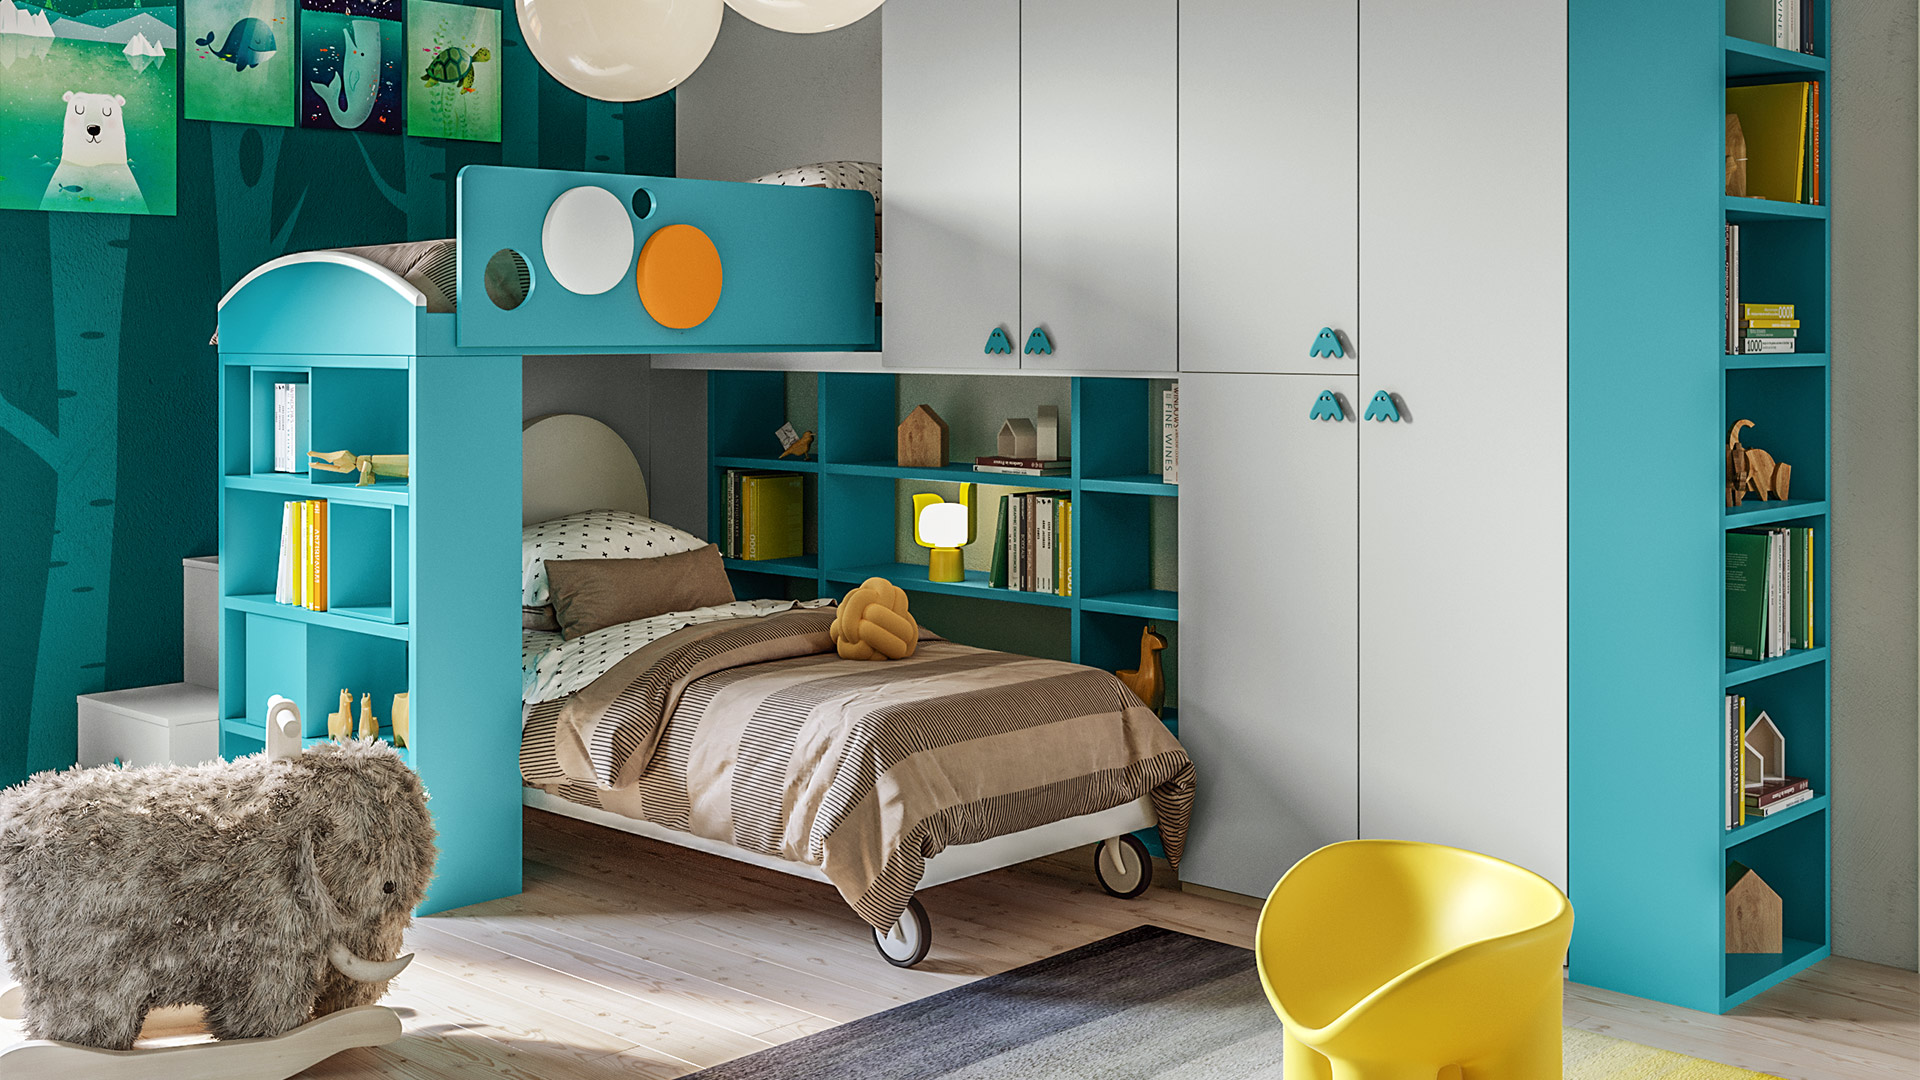 The bunk bed, the solution to optimize the space in the bedroom - Giessegi - Qualità e risparmio hanno trovato casa.	